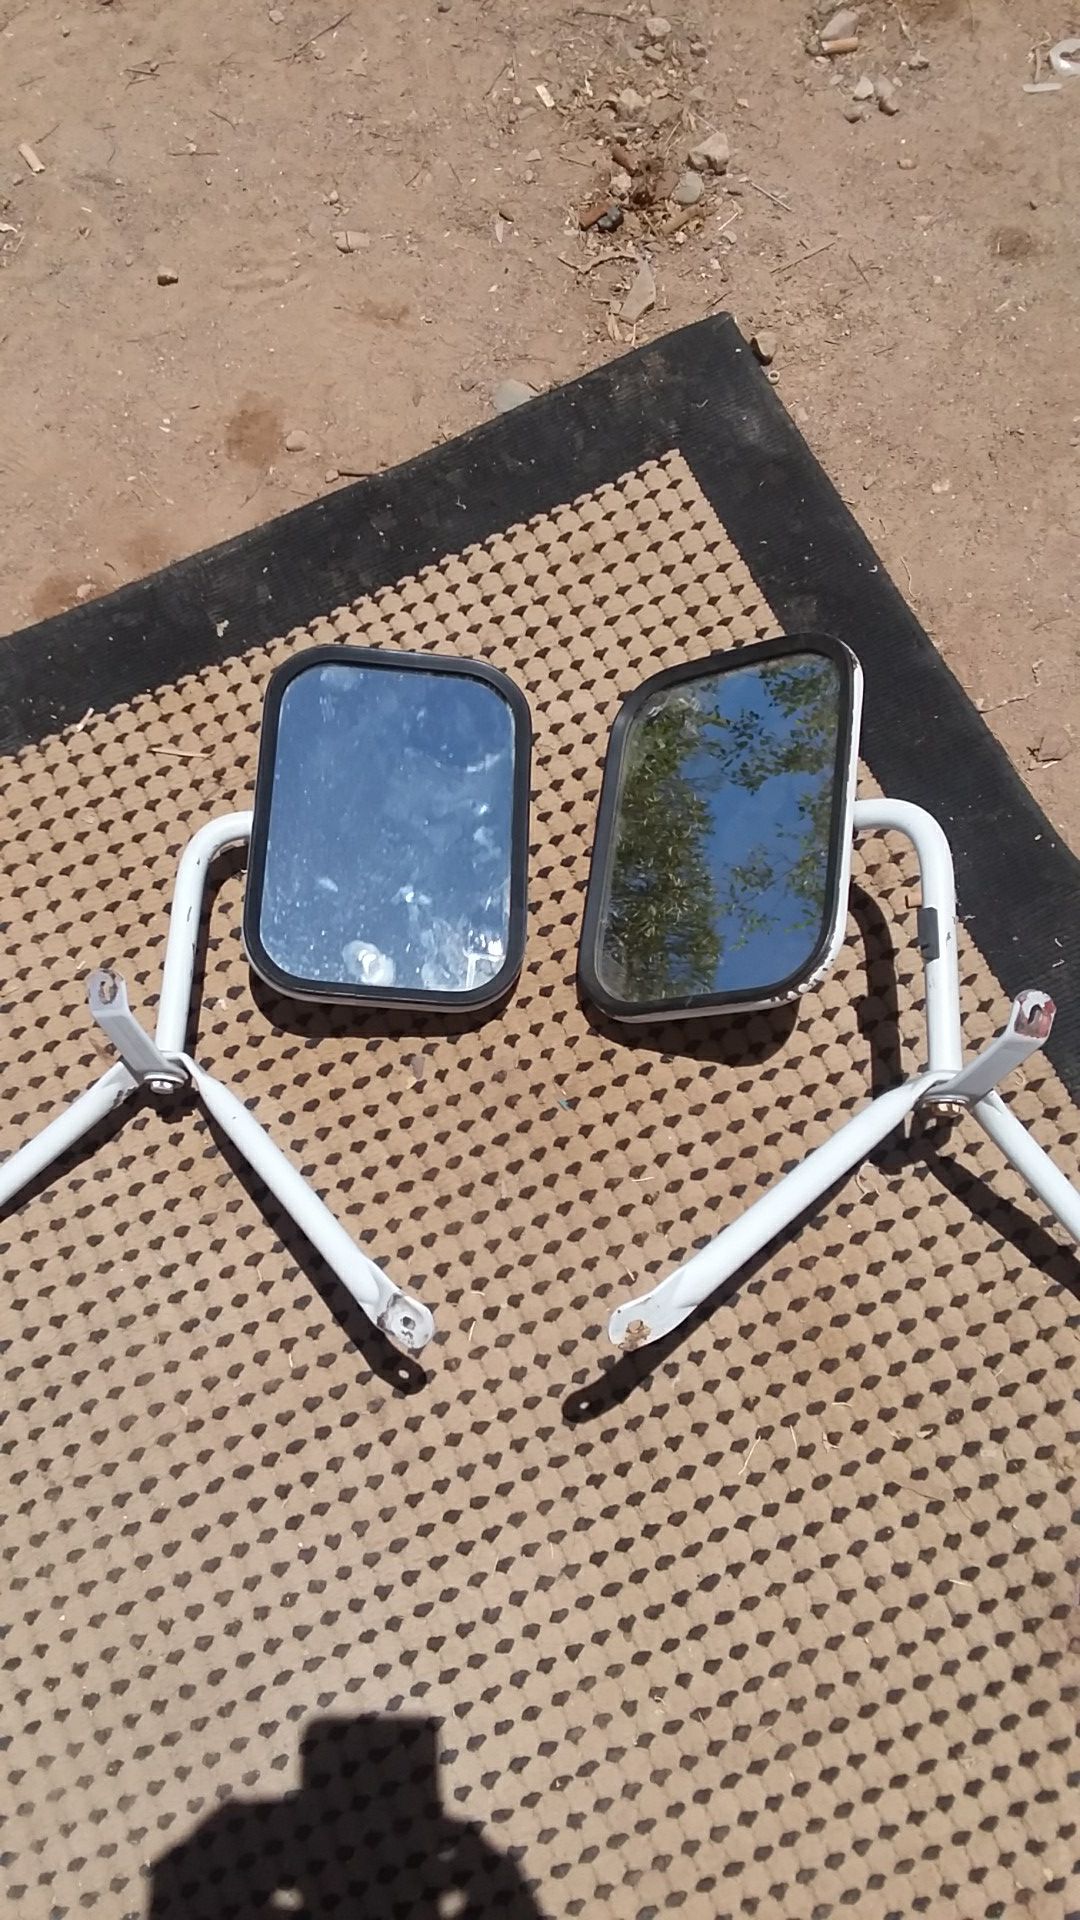 Chevy C10 mirrors